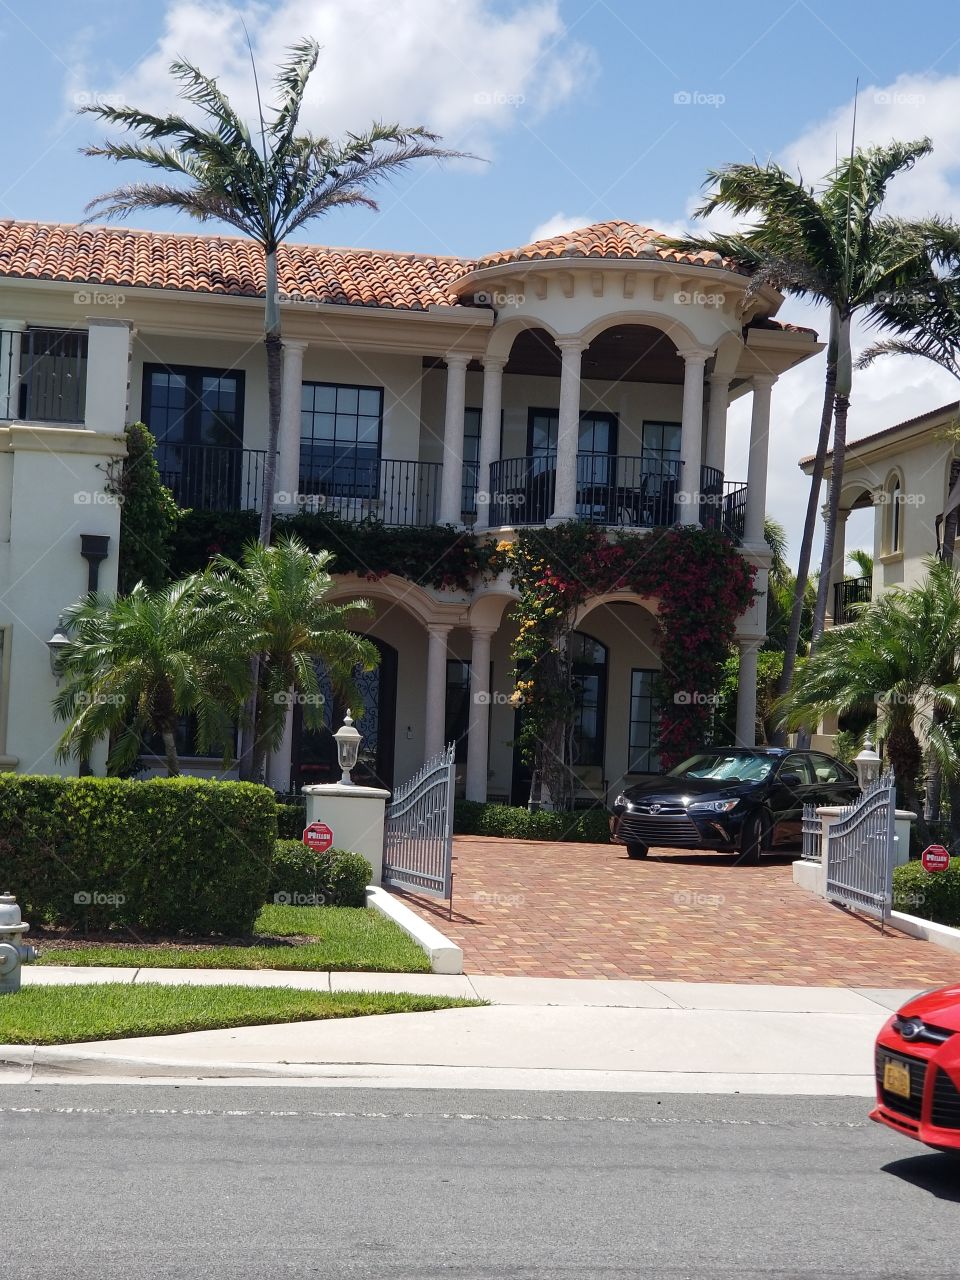 West Palm Beach houses